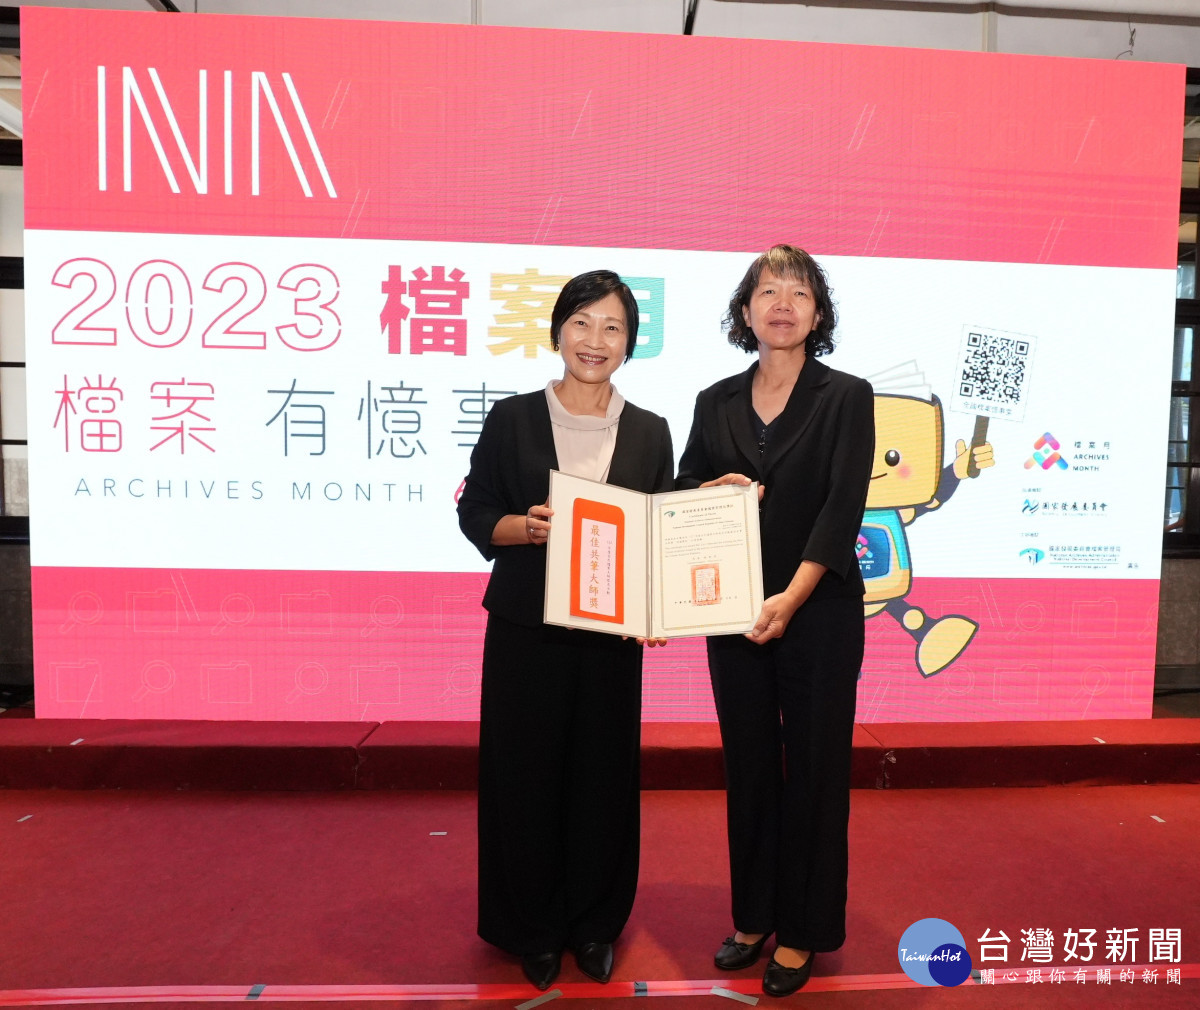 林眞美獲頒年度最佳共筆大師獎第一名。